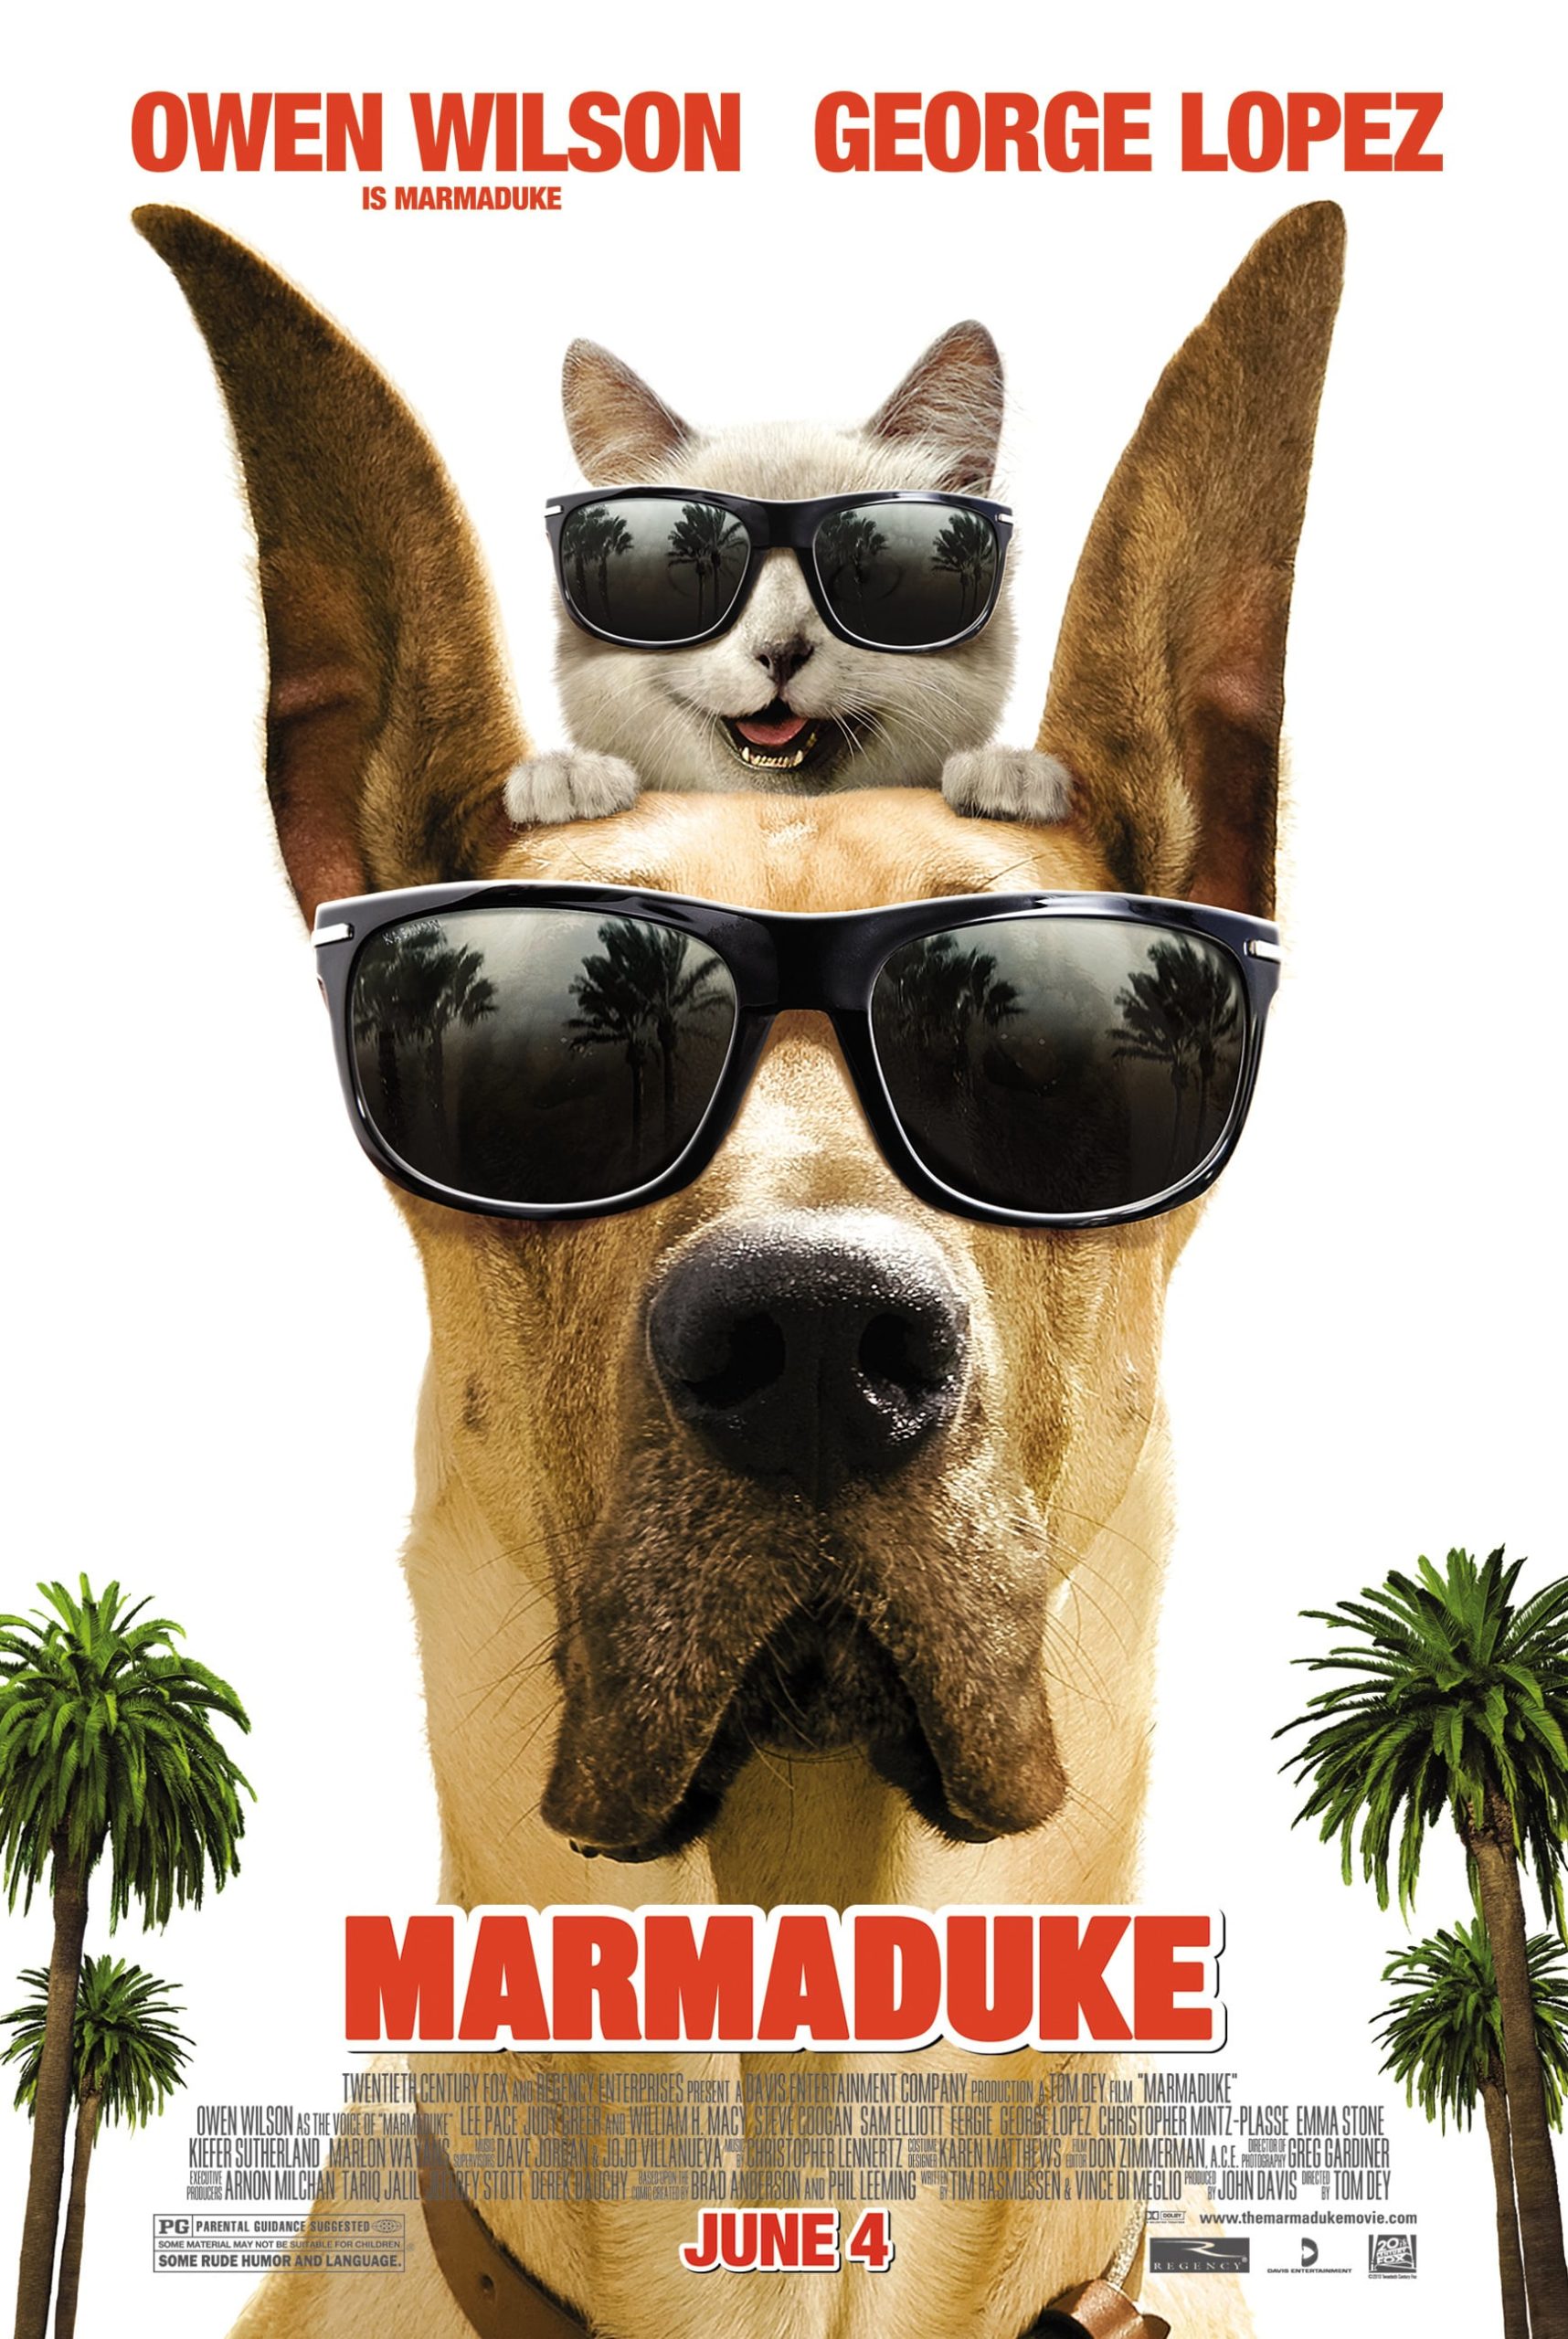 Marmaduke poster